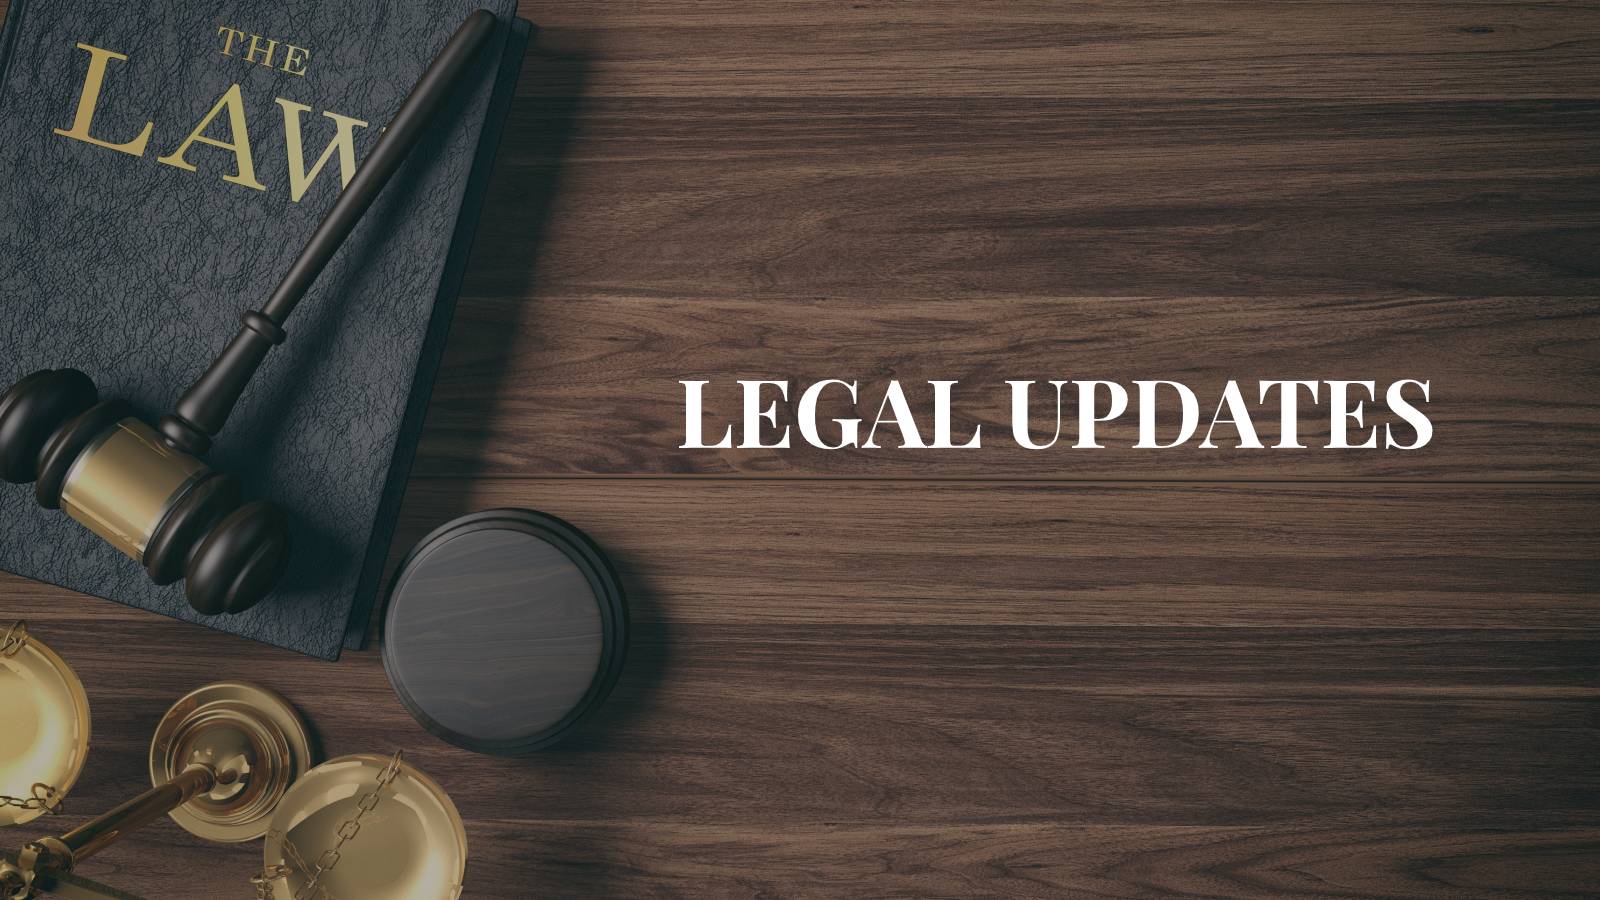 Legal Updates